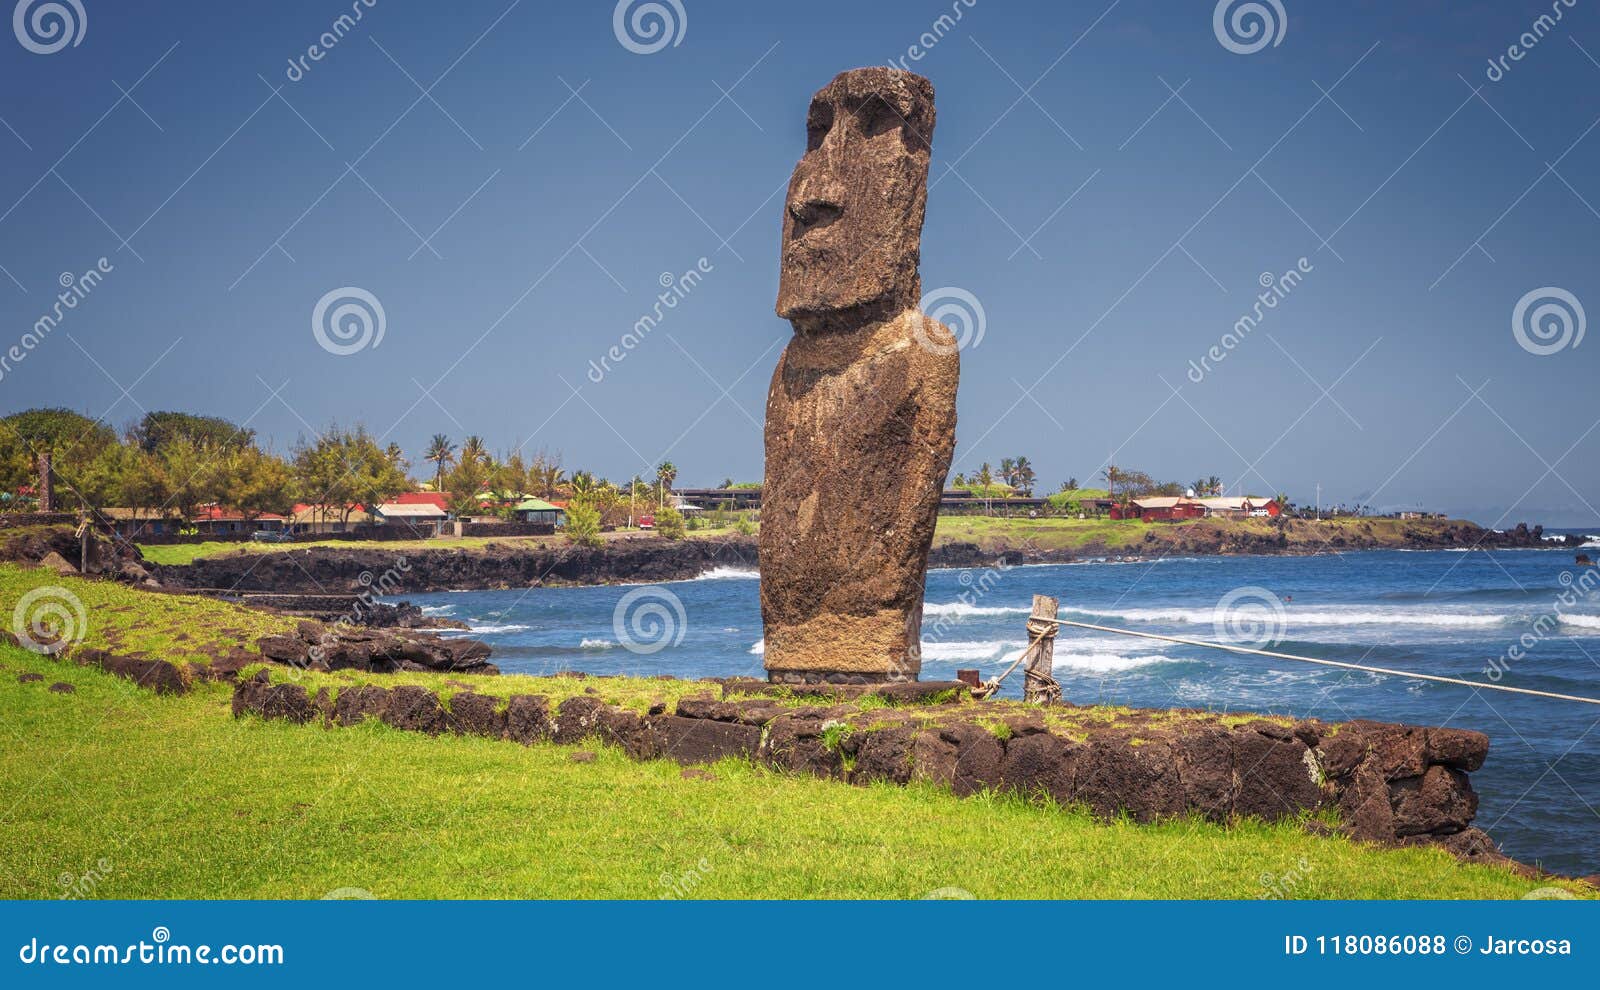 moai statue at the harbor on hanga roa, easter island, chile